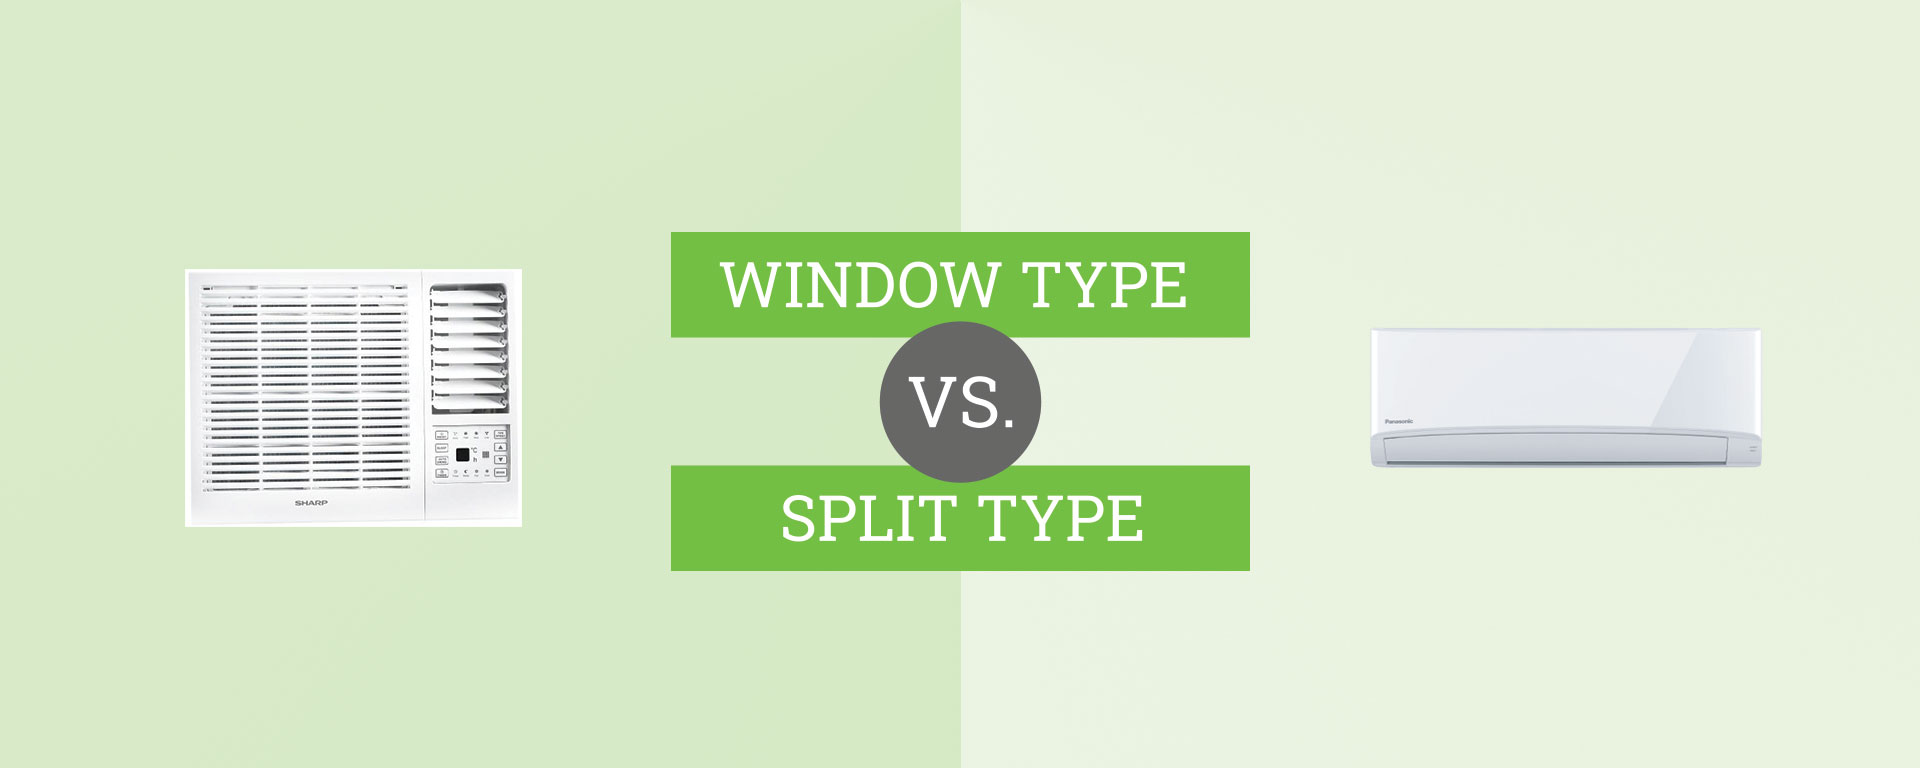 window type vs. split type aircon